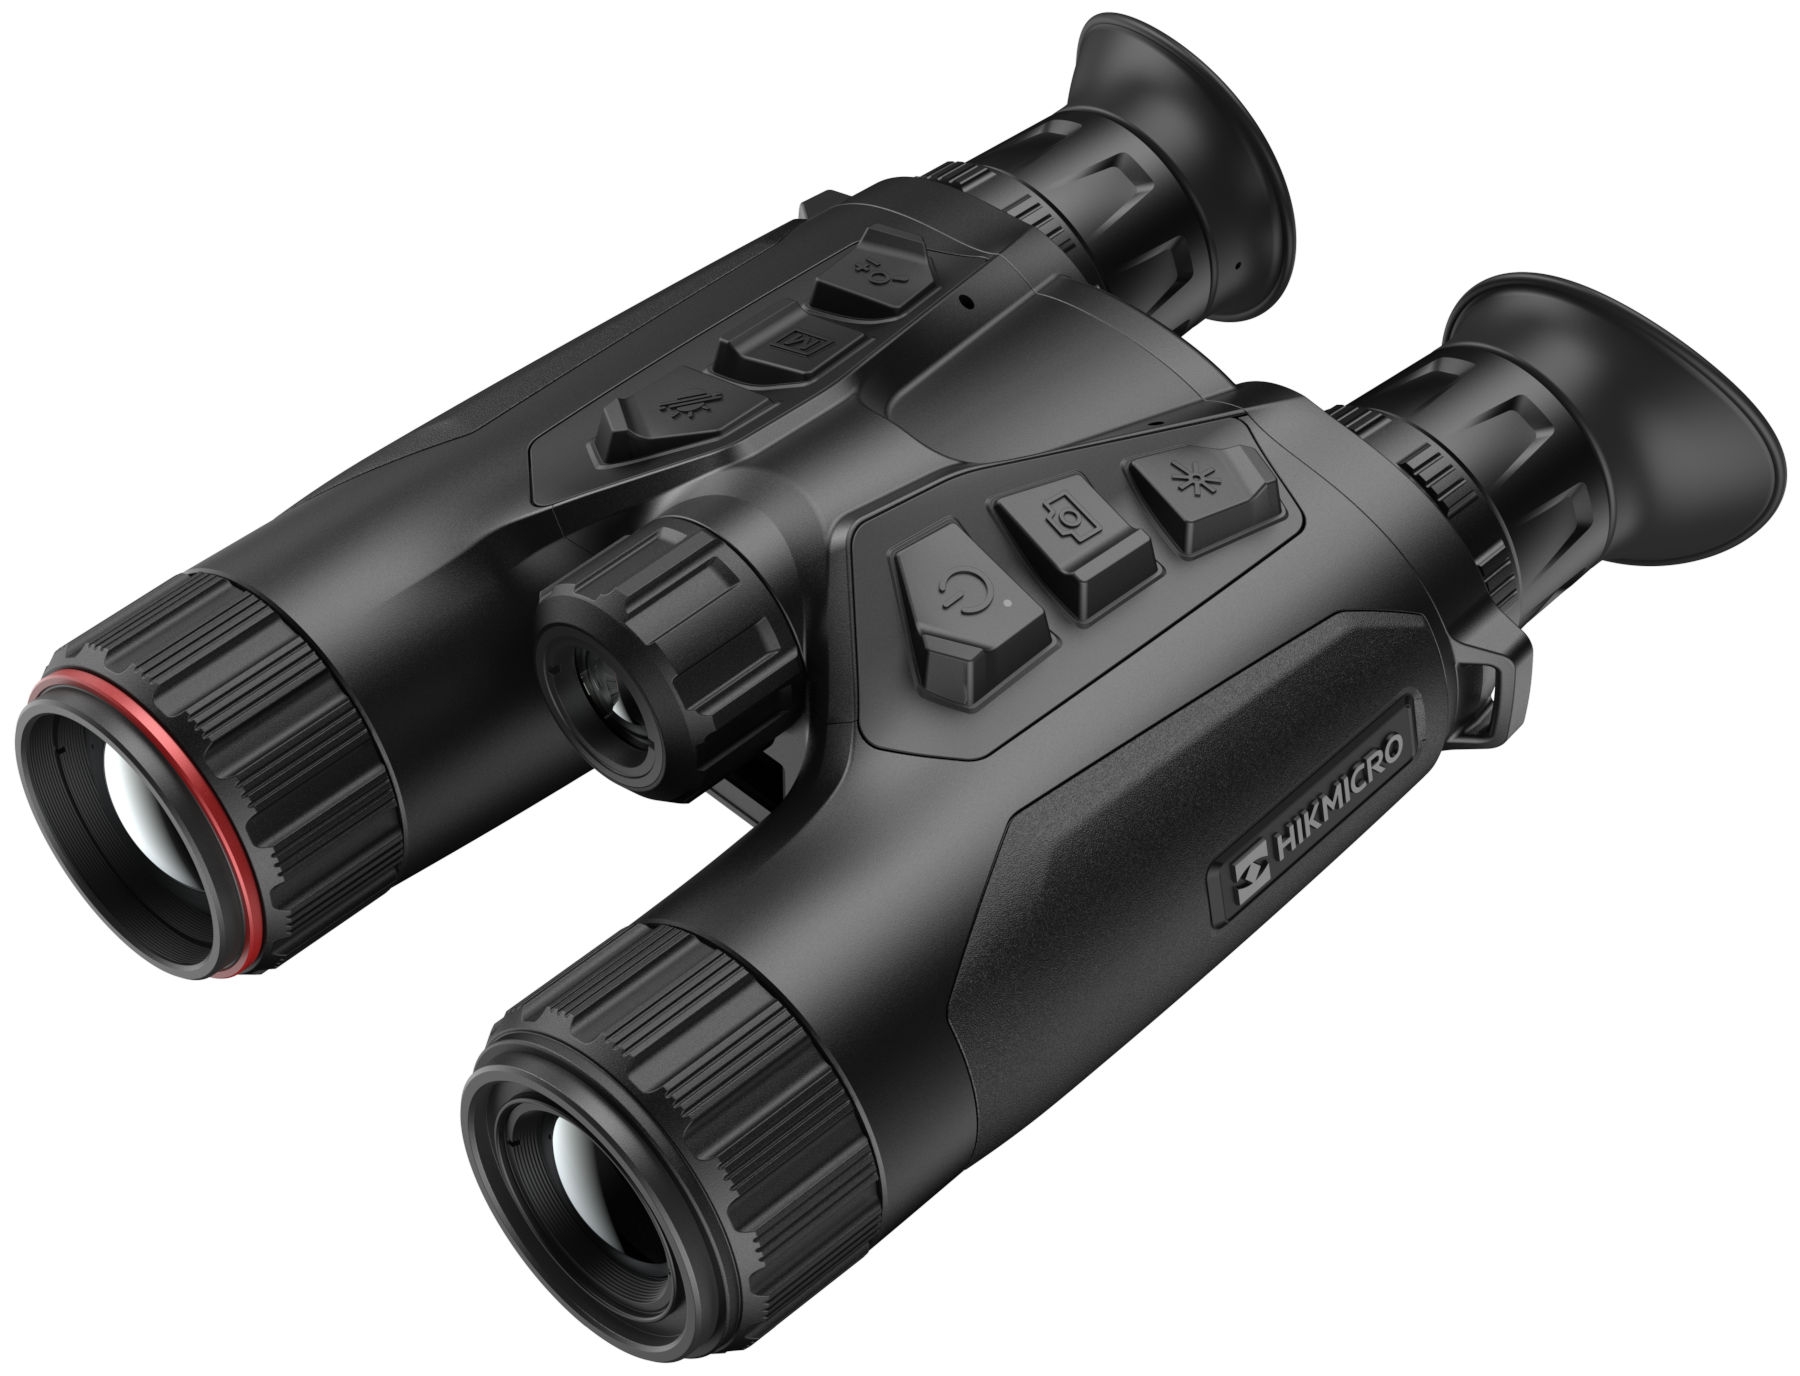 hik micro hq35 lrf thermal imaging binoculars